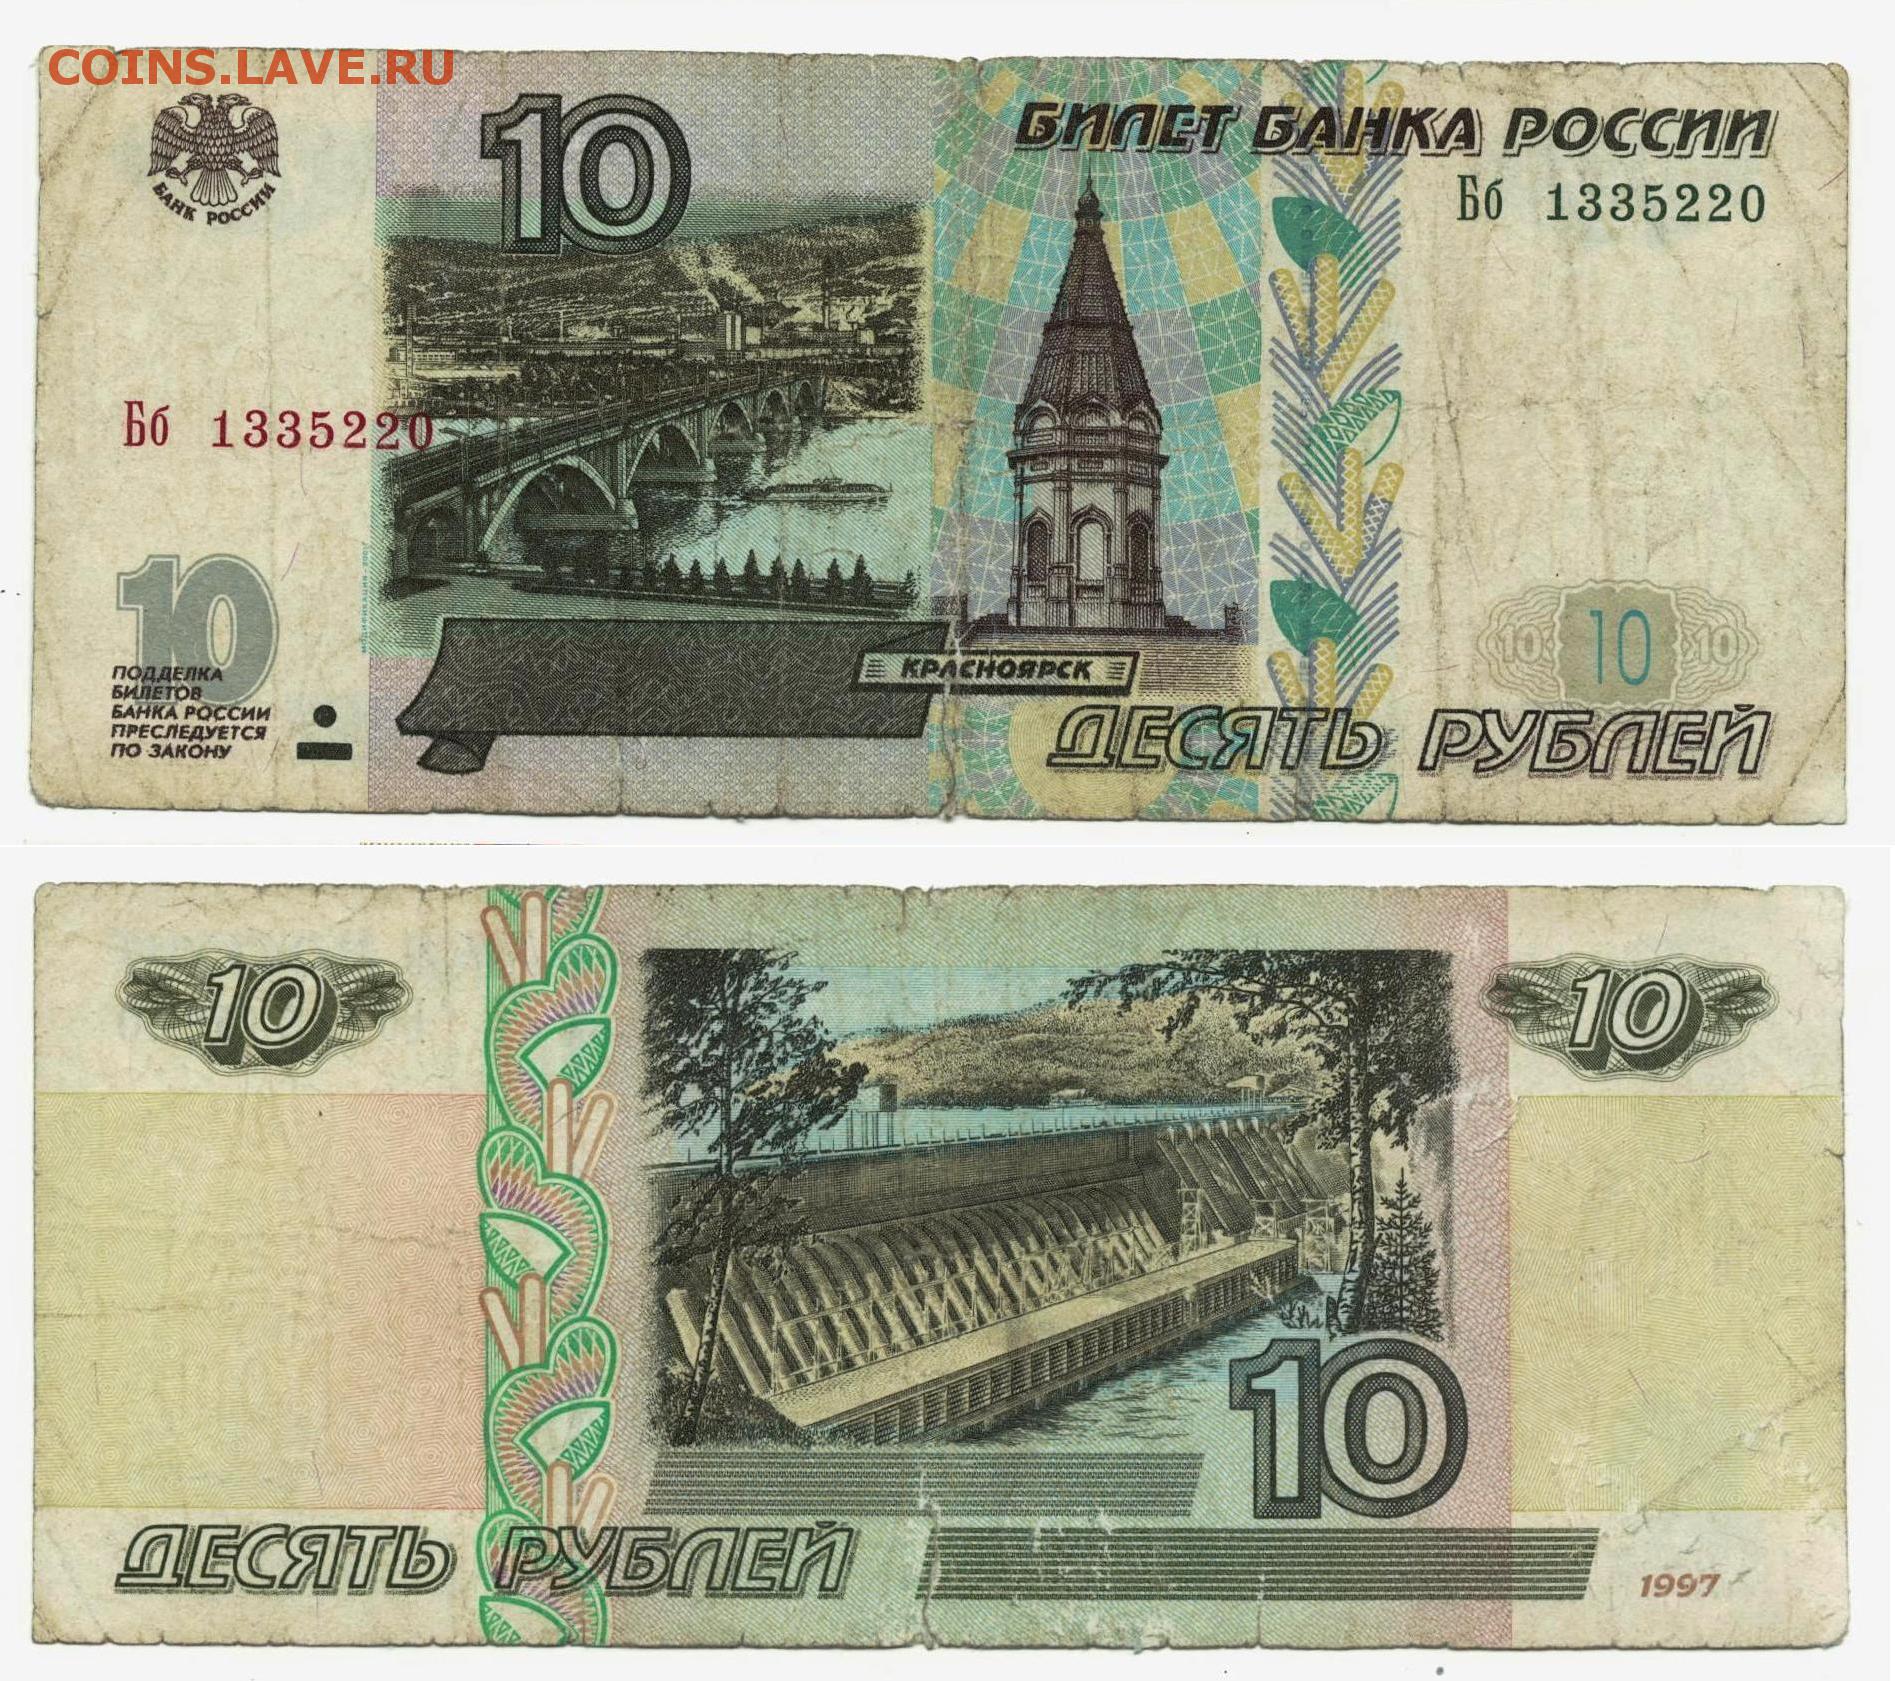 10000 руб сколько. 10000 Рублей модификация 1995 года. Банкноты 10000 рублей 1997. Банкнота 10000 рублей 1995 года. Купюра 10000 рублей 1995 года.